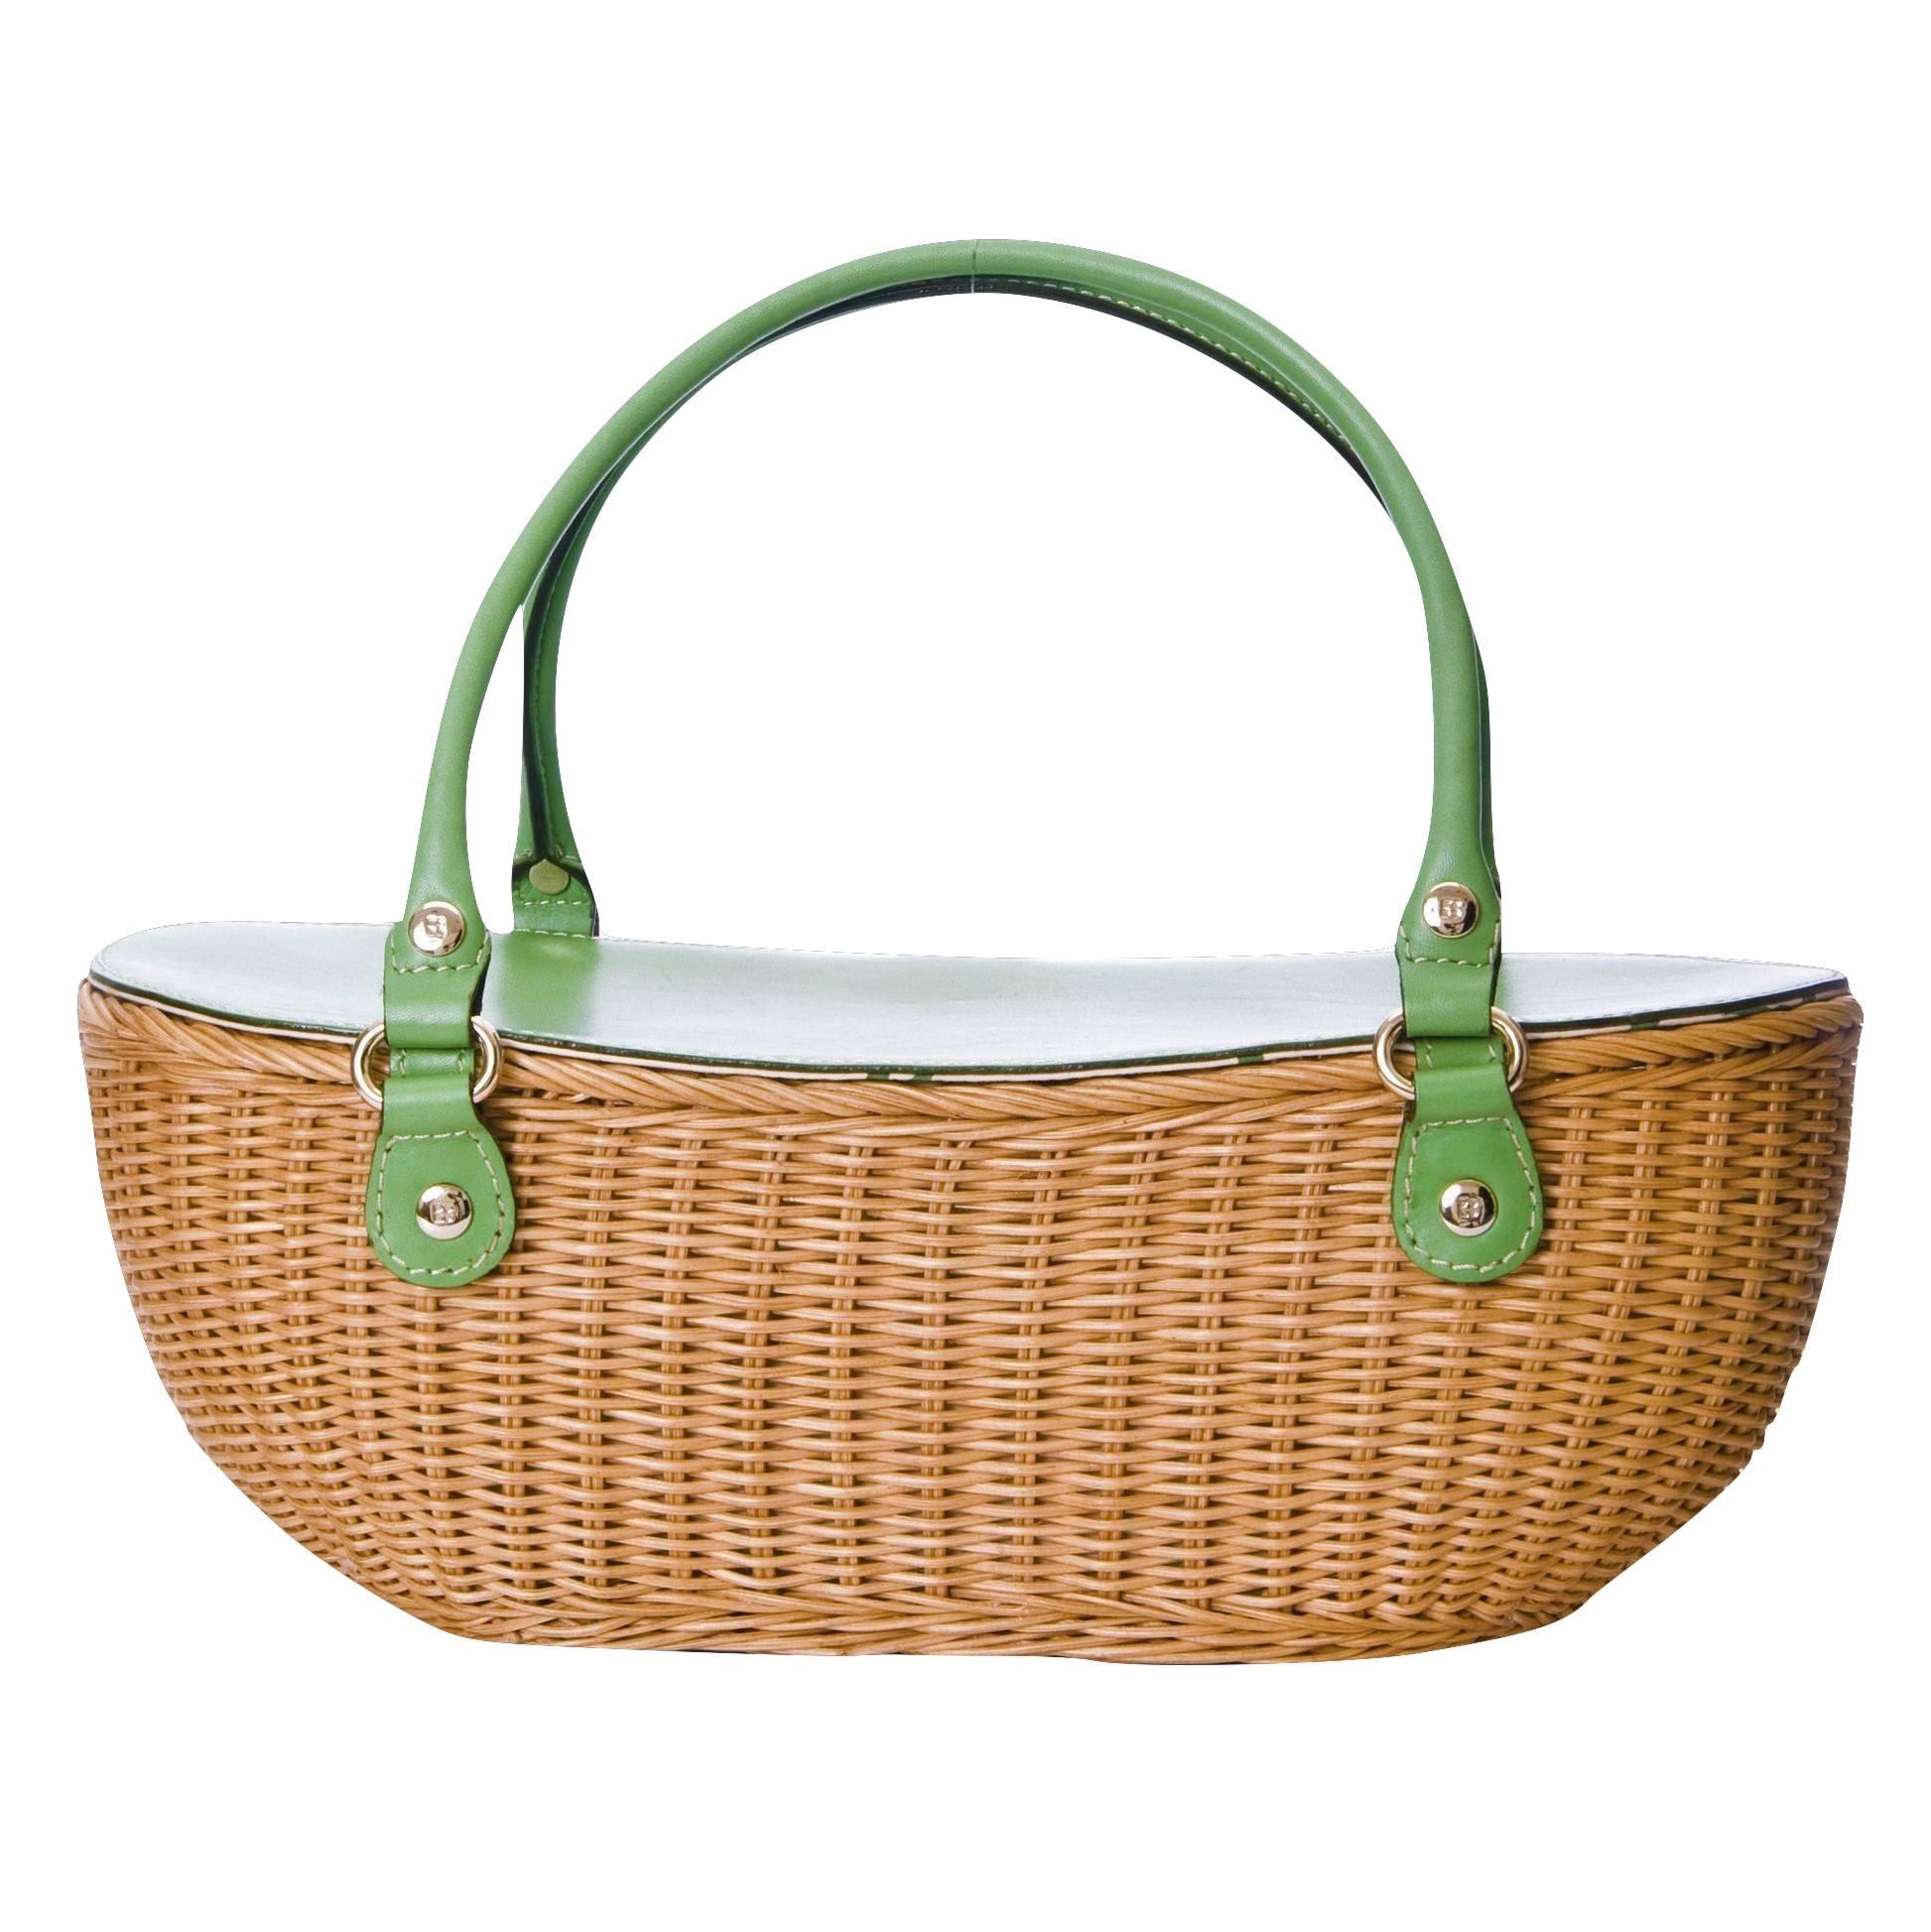 New Kate Spade Rare Collectible Spring 2005 Green Wicker Basket Bag  3